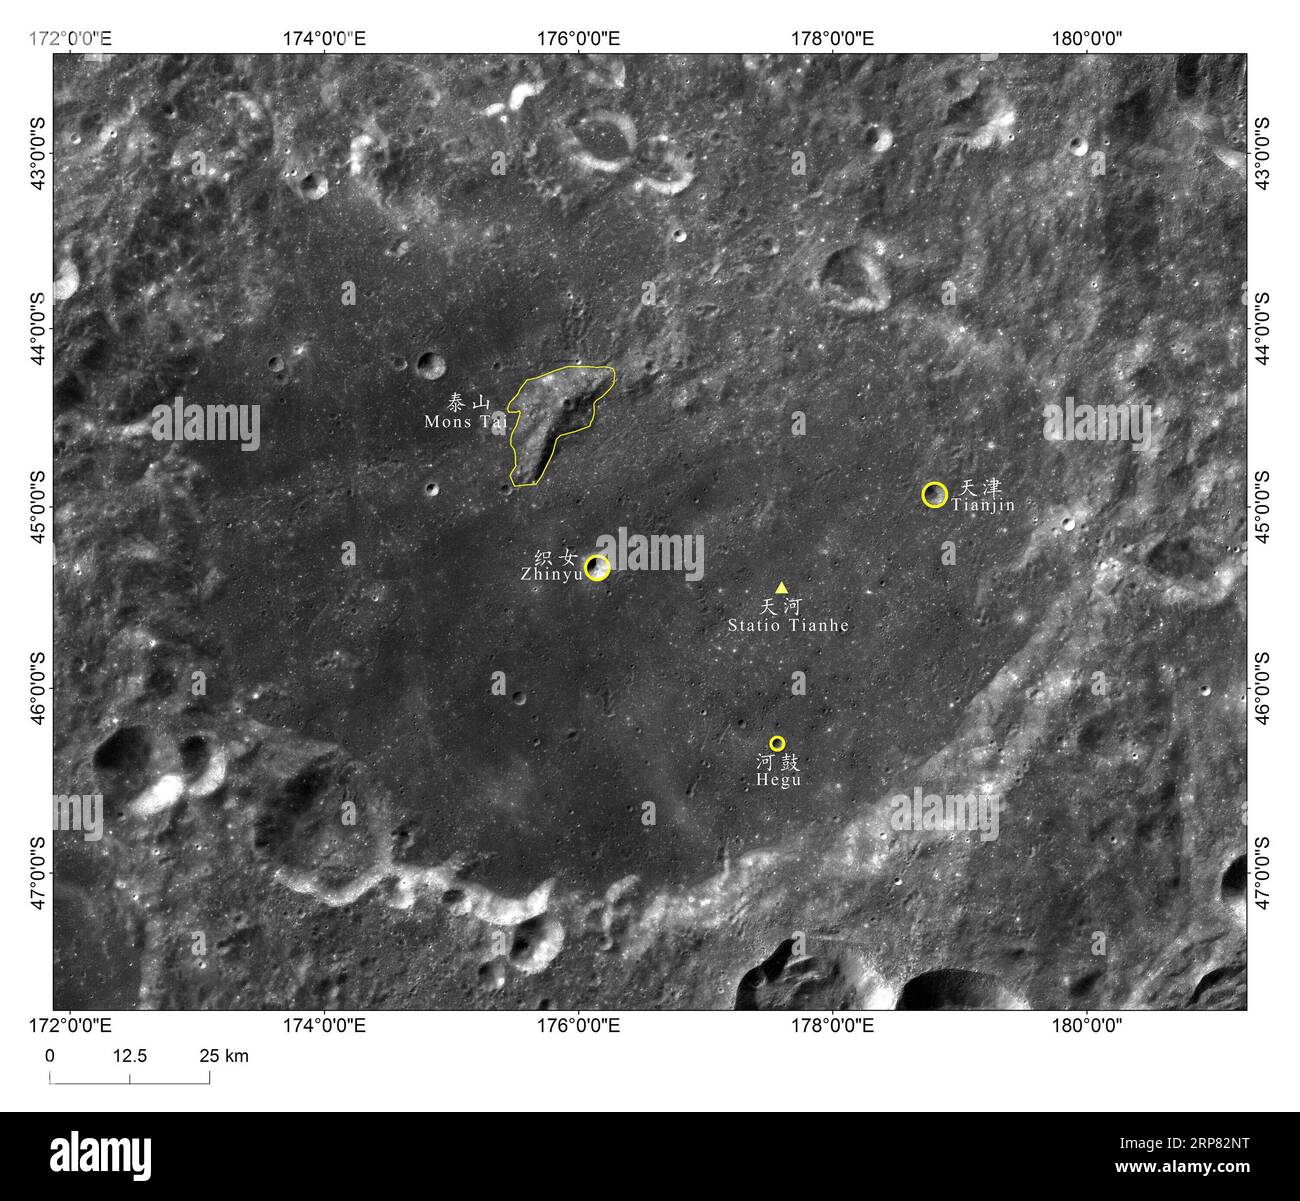 (190216) -- PECHINO, 16 febbraio 2019 (Xinhua) -- la foto fornita dalla China National Space Administration (CNSA) mostra l'immagine del sito di atterraggio della sonda lunare cinese Chang e-4, Statio Tianhe , circondata da tre crateri da impatto vicini e da una collina. Il sito di atterraggio della sonda lunare cinese Chang e-4 è stato chiamato Statio Tianhe dopo che la navicella spaziale ha effettuato il primo atterraggio morbido sul lato lontano della luna il mese scorso. Insieme a tre crateri da impatto vicini e una collina, il nome è stato approvato dall'Unione Astronomica Internazionale (IAU), Liu Jizhong, direttore della China Lunar Explora Foto Stock